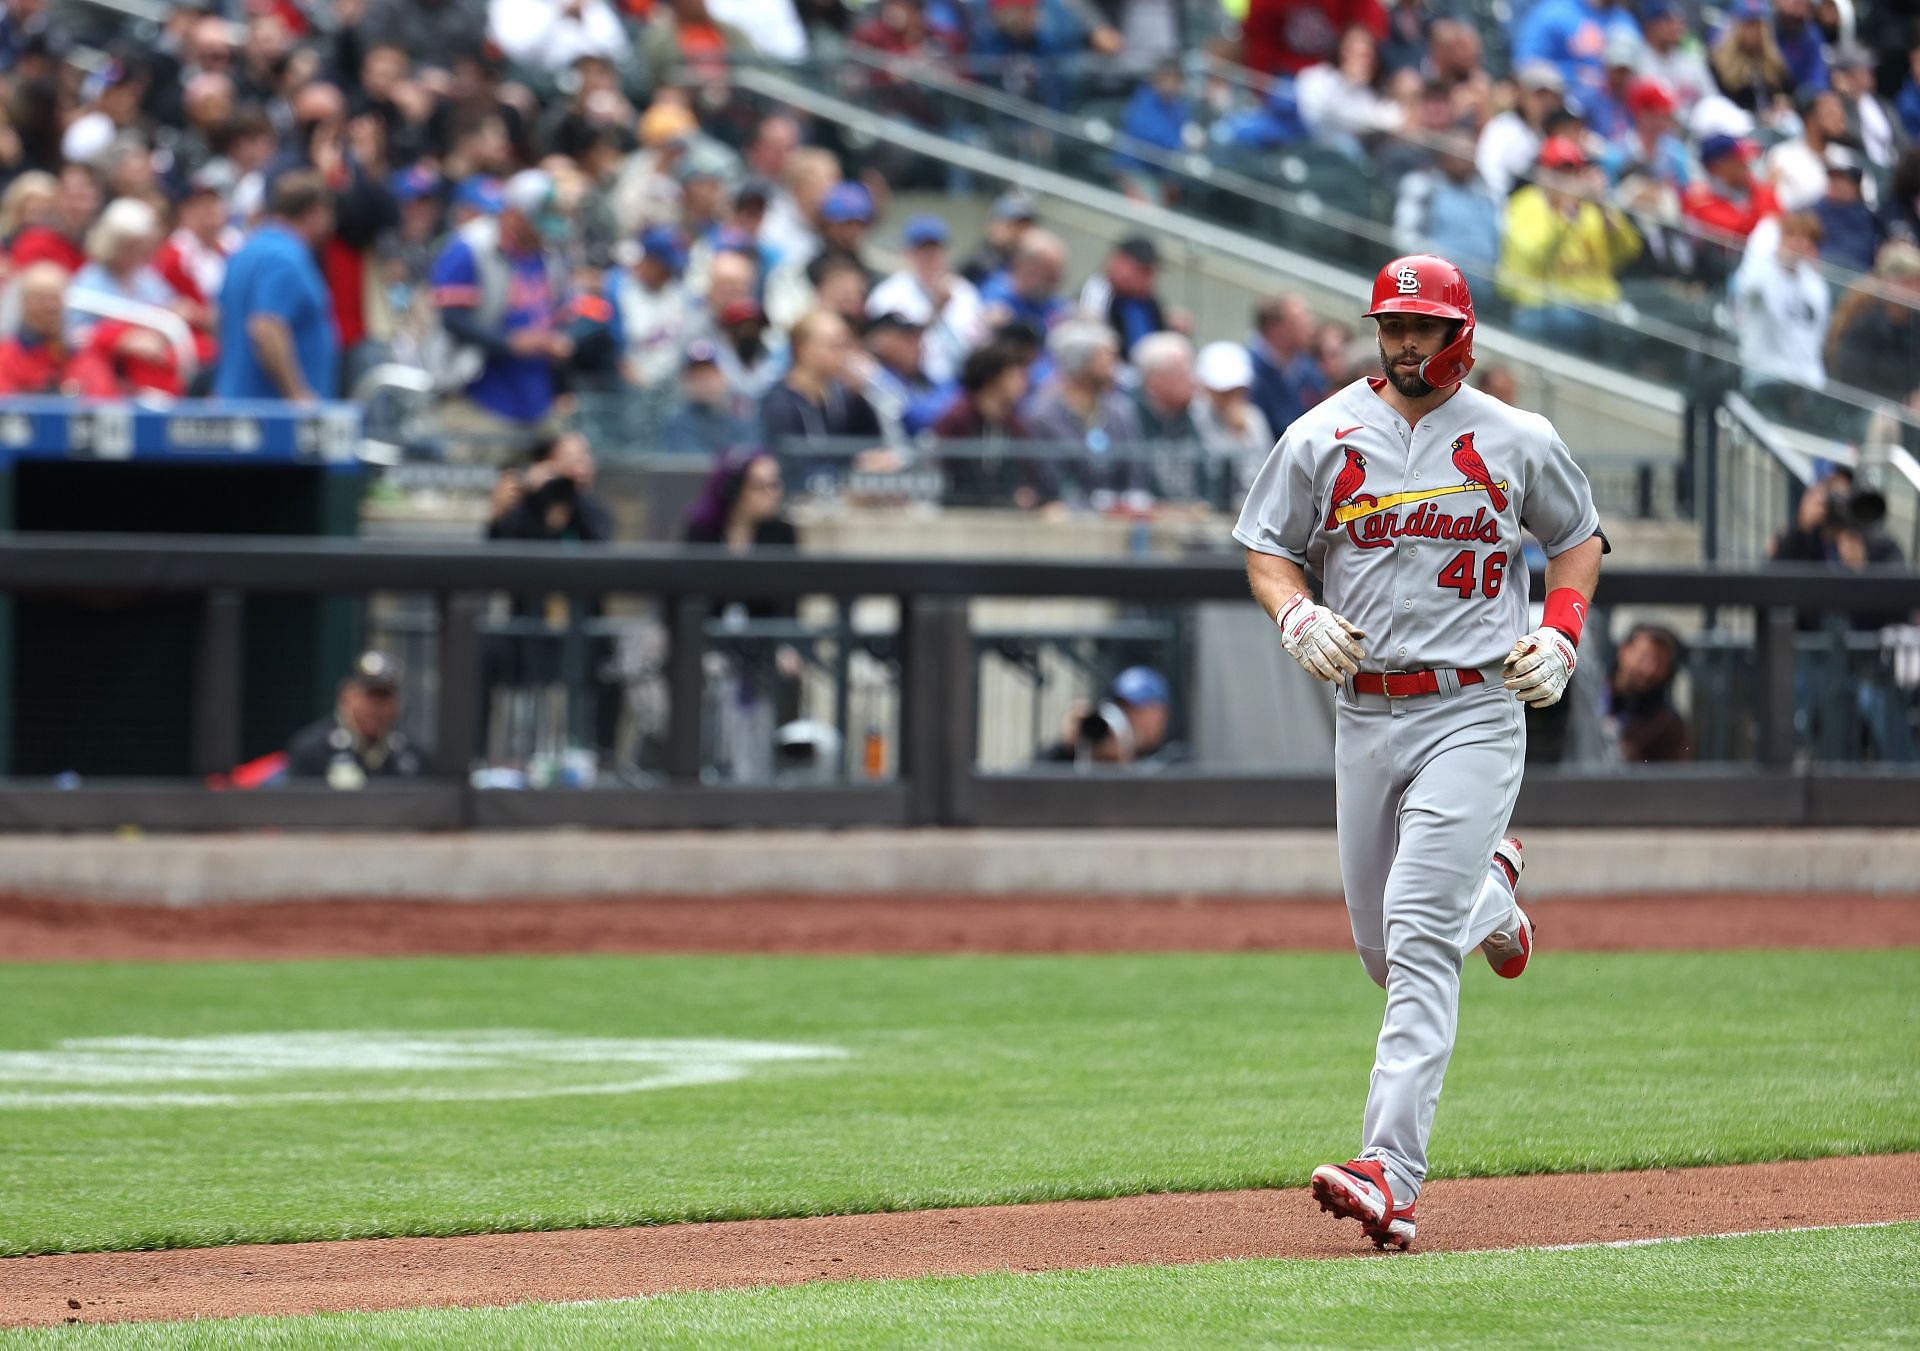 St. Louis Cardinals slugger Paul Goldschmidt has hit four home runs in the past 24 hours